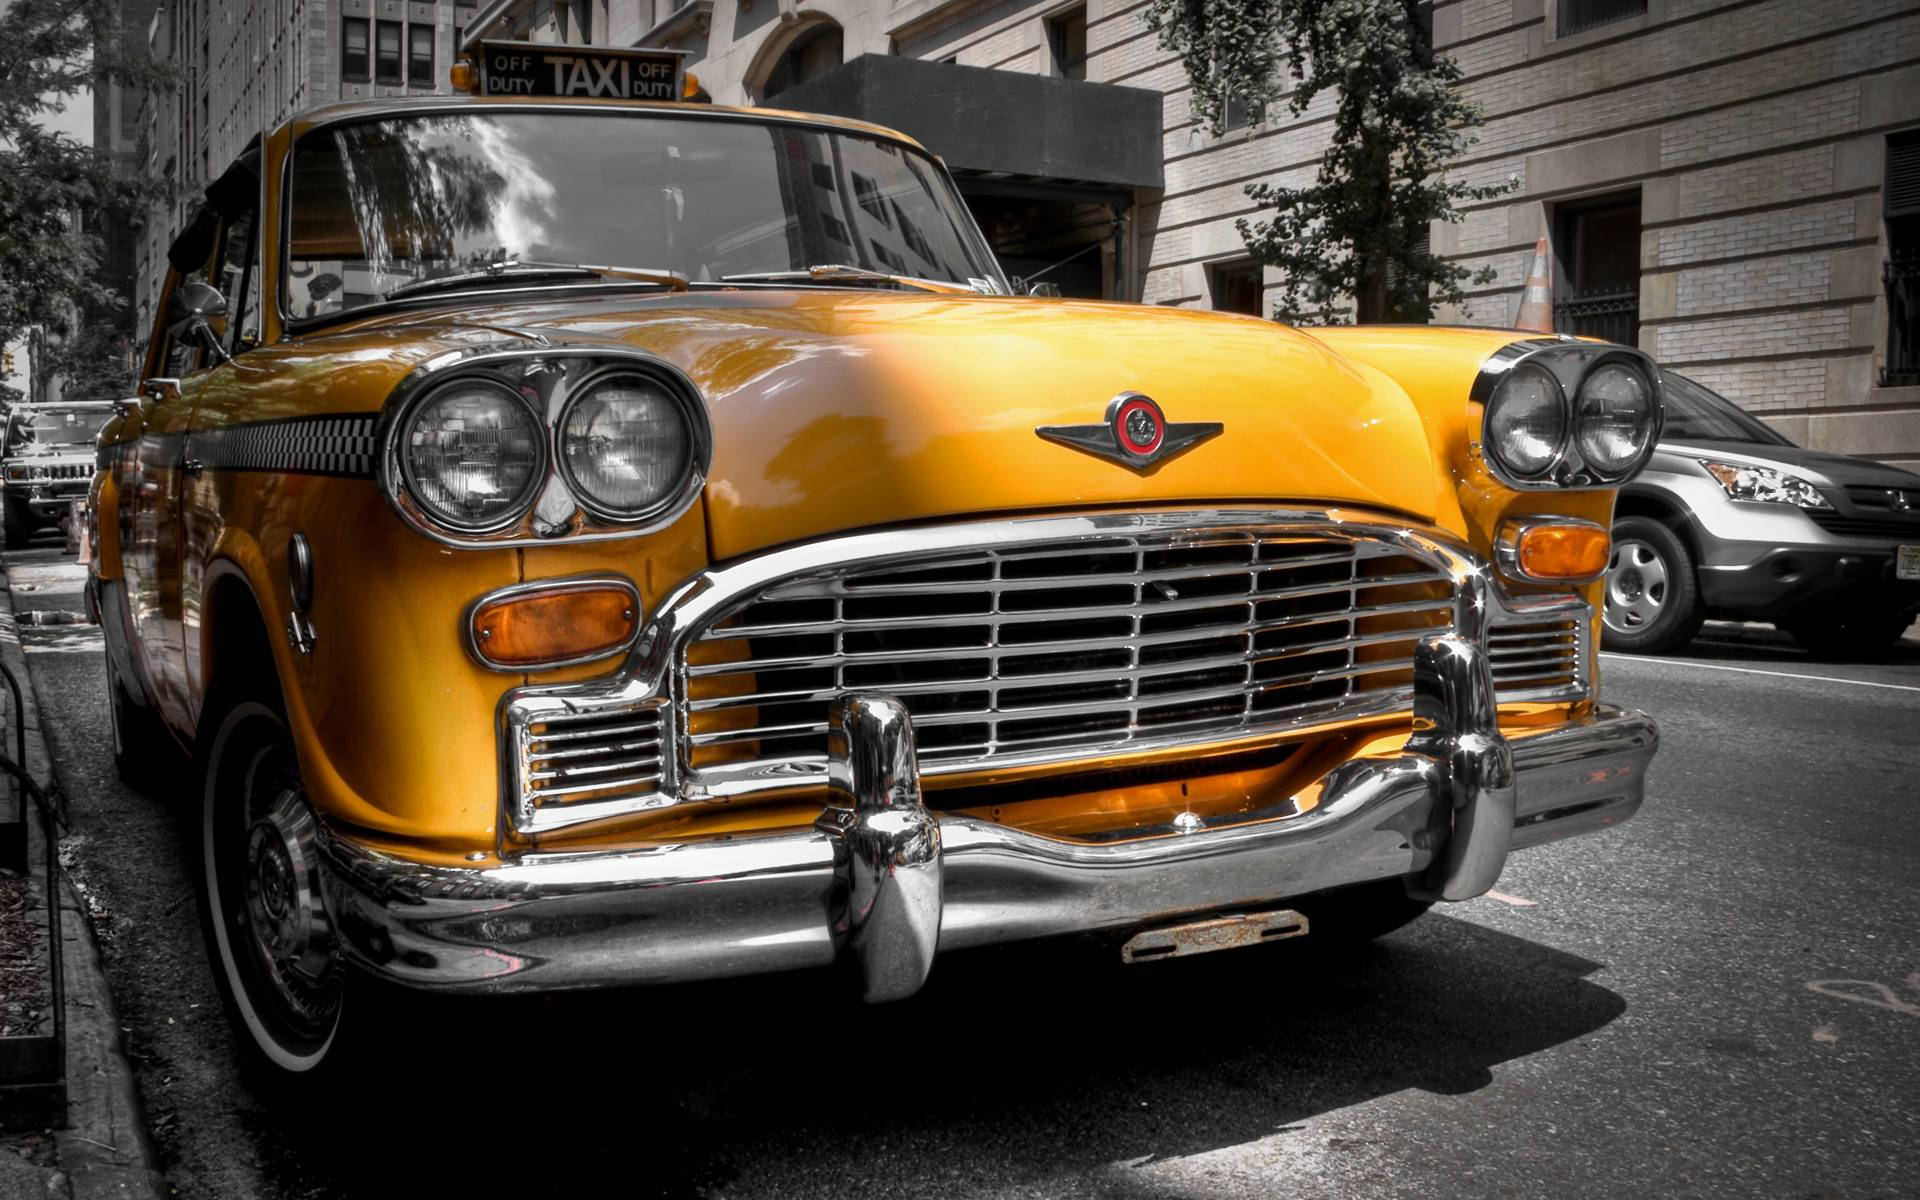 Caption: Relic of An Era: Vintage Checker Taxi Cab Wallpaper